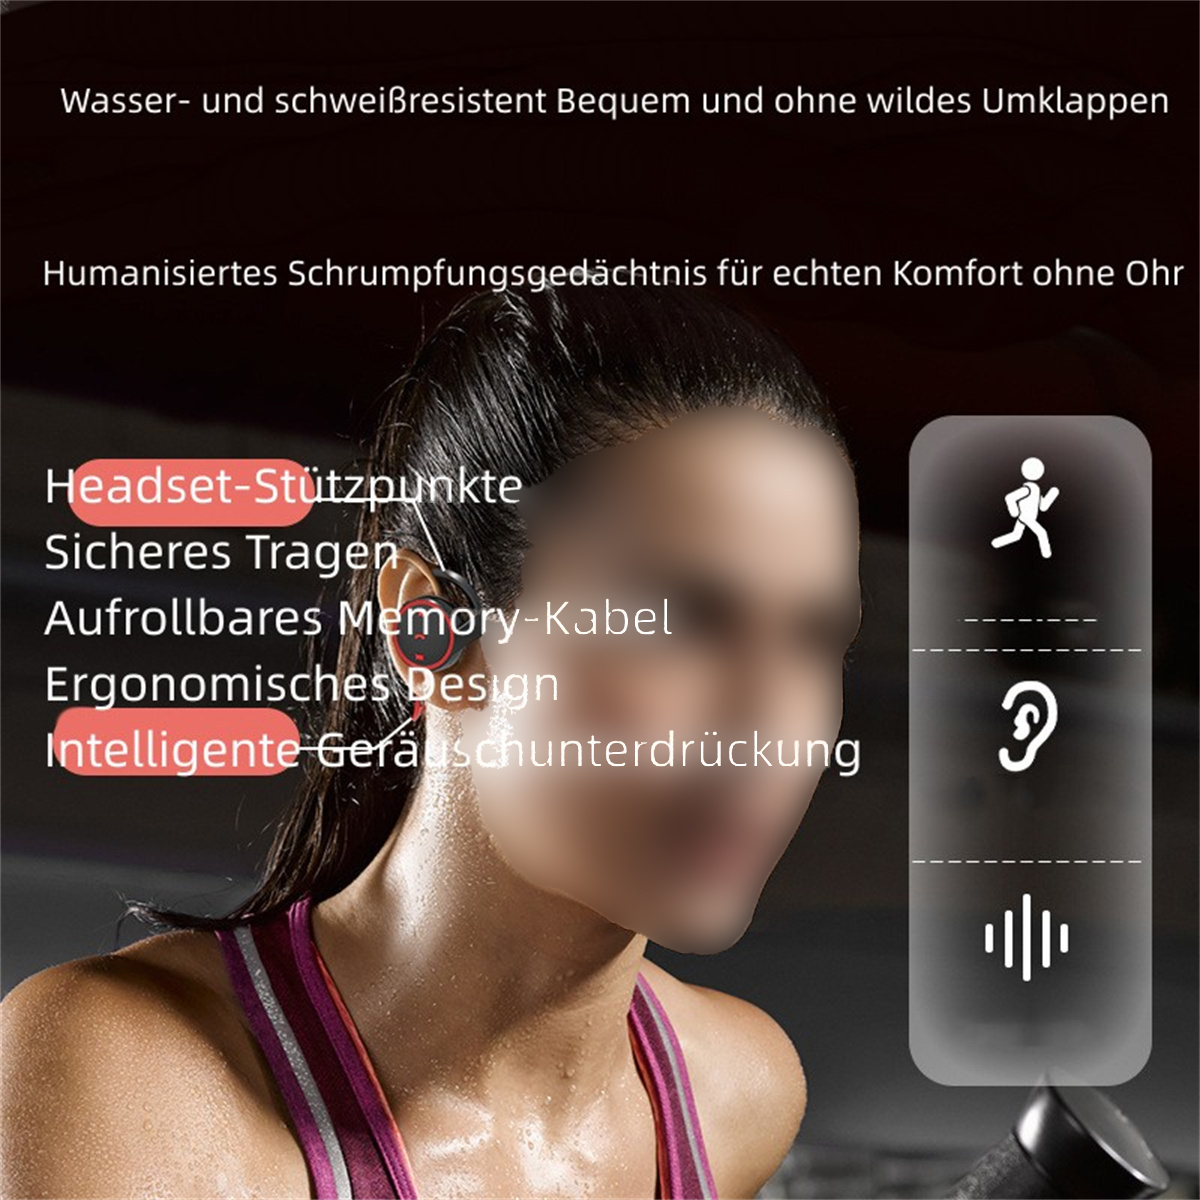 SYNTEK Bluetooth-Kopfhörer Grün On-Ear Bluetooth Kopfhörer Sports Wireless Pluggable Grün Kopfhörer, Bluetooth In-ear